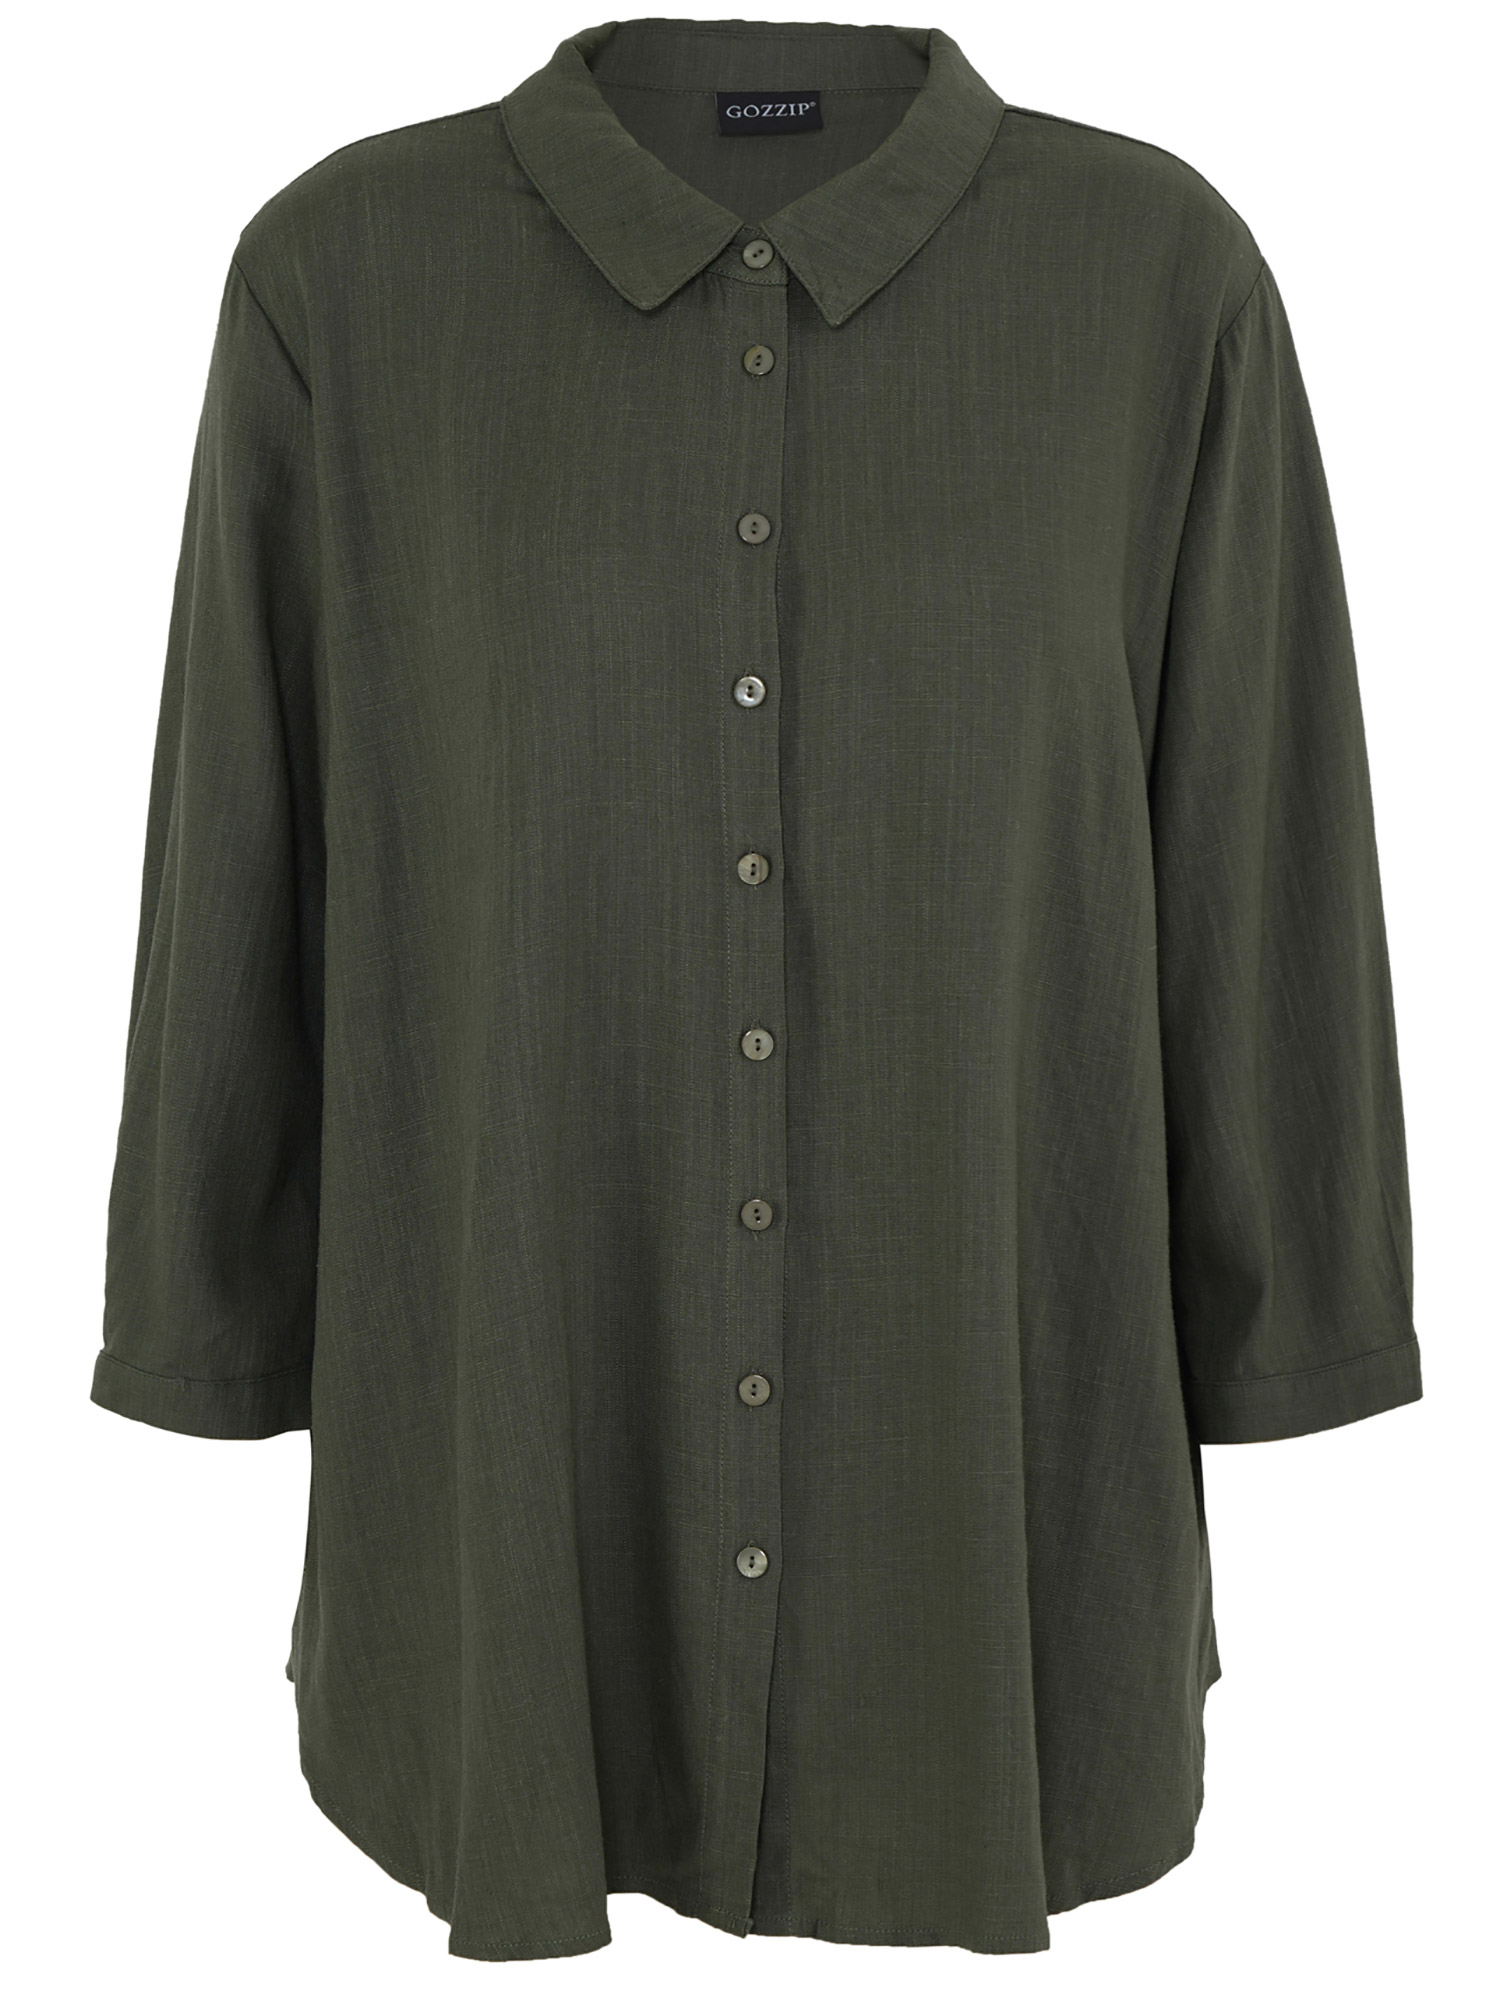 KARINA - Flot grøn skjorte i en eksklusiv viskose/Hør kvalitet fra Gozzip